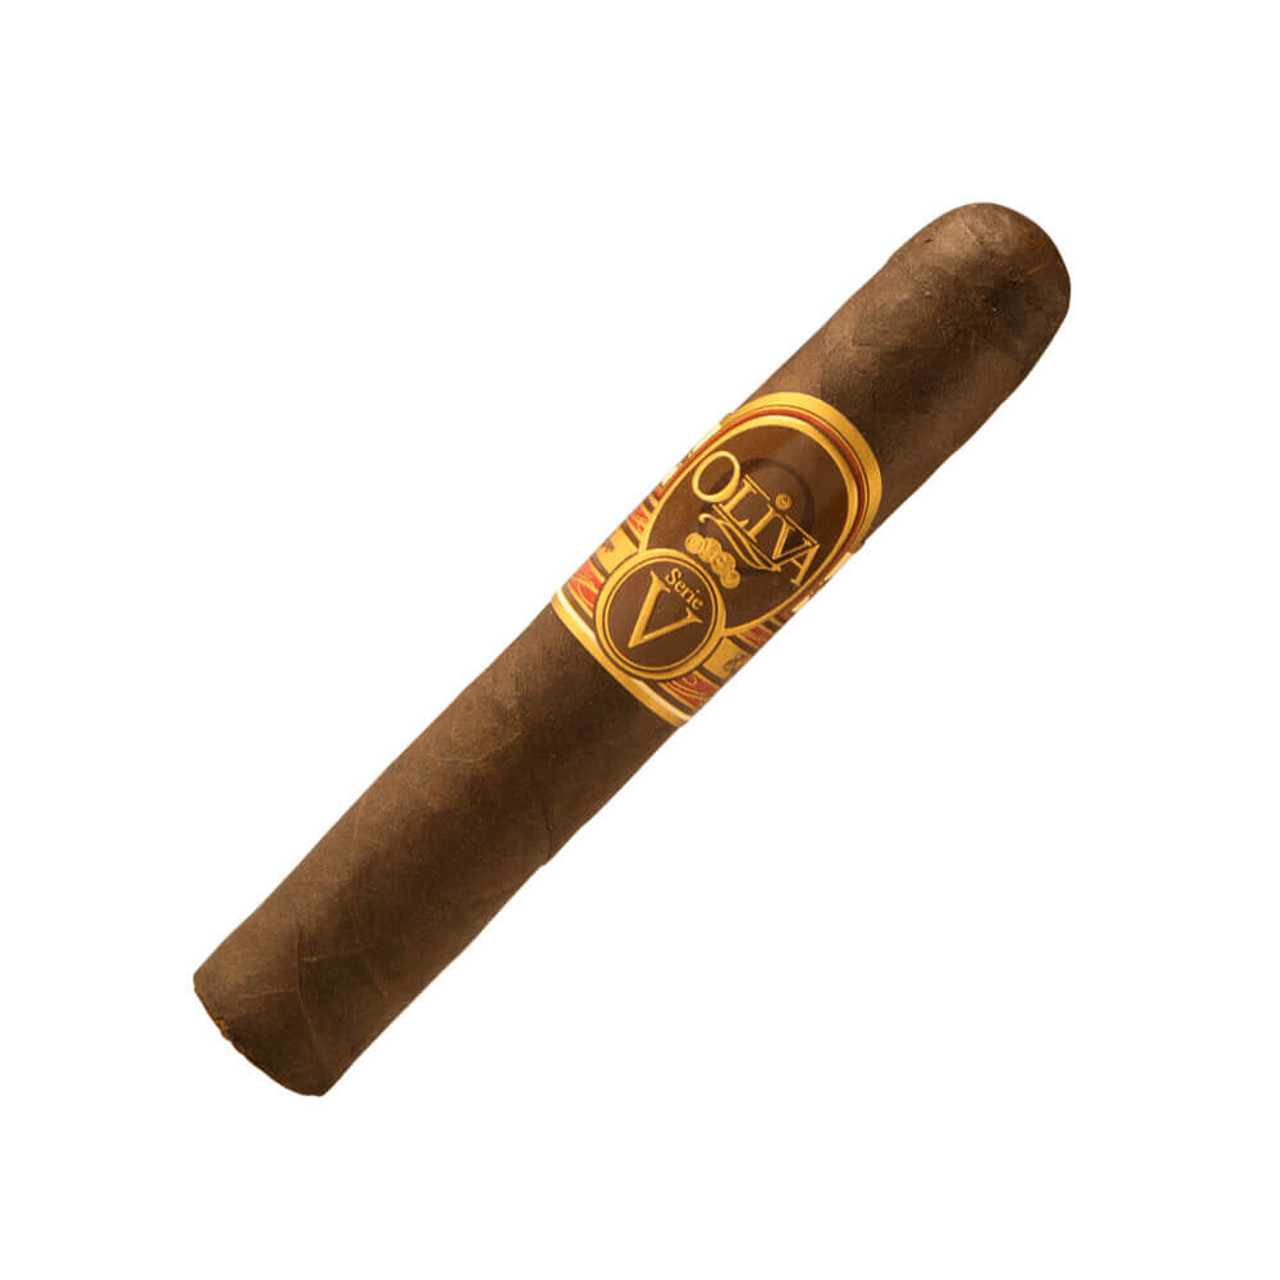 Oliva Serie V Maduro Especial Double Robusto Cigars - 5.0 x 54 (Box of 10)